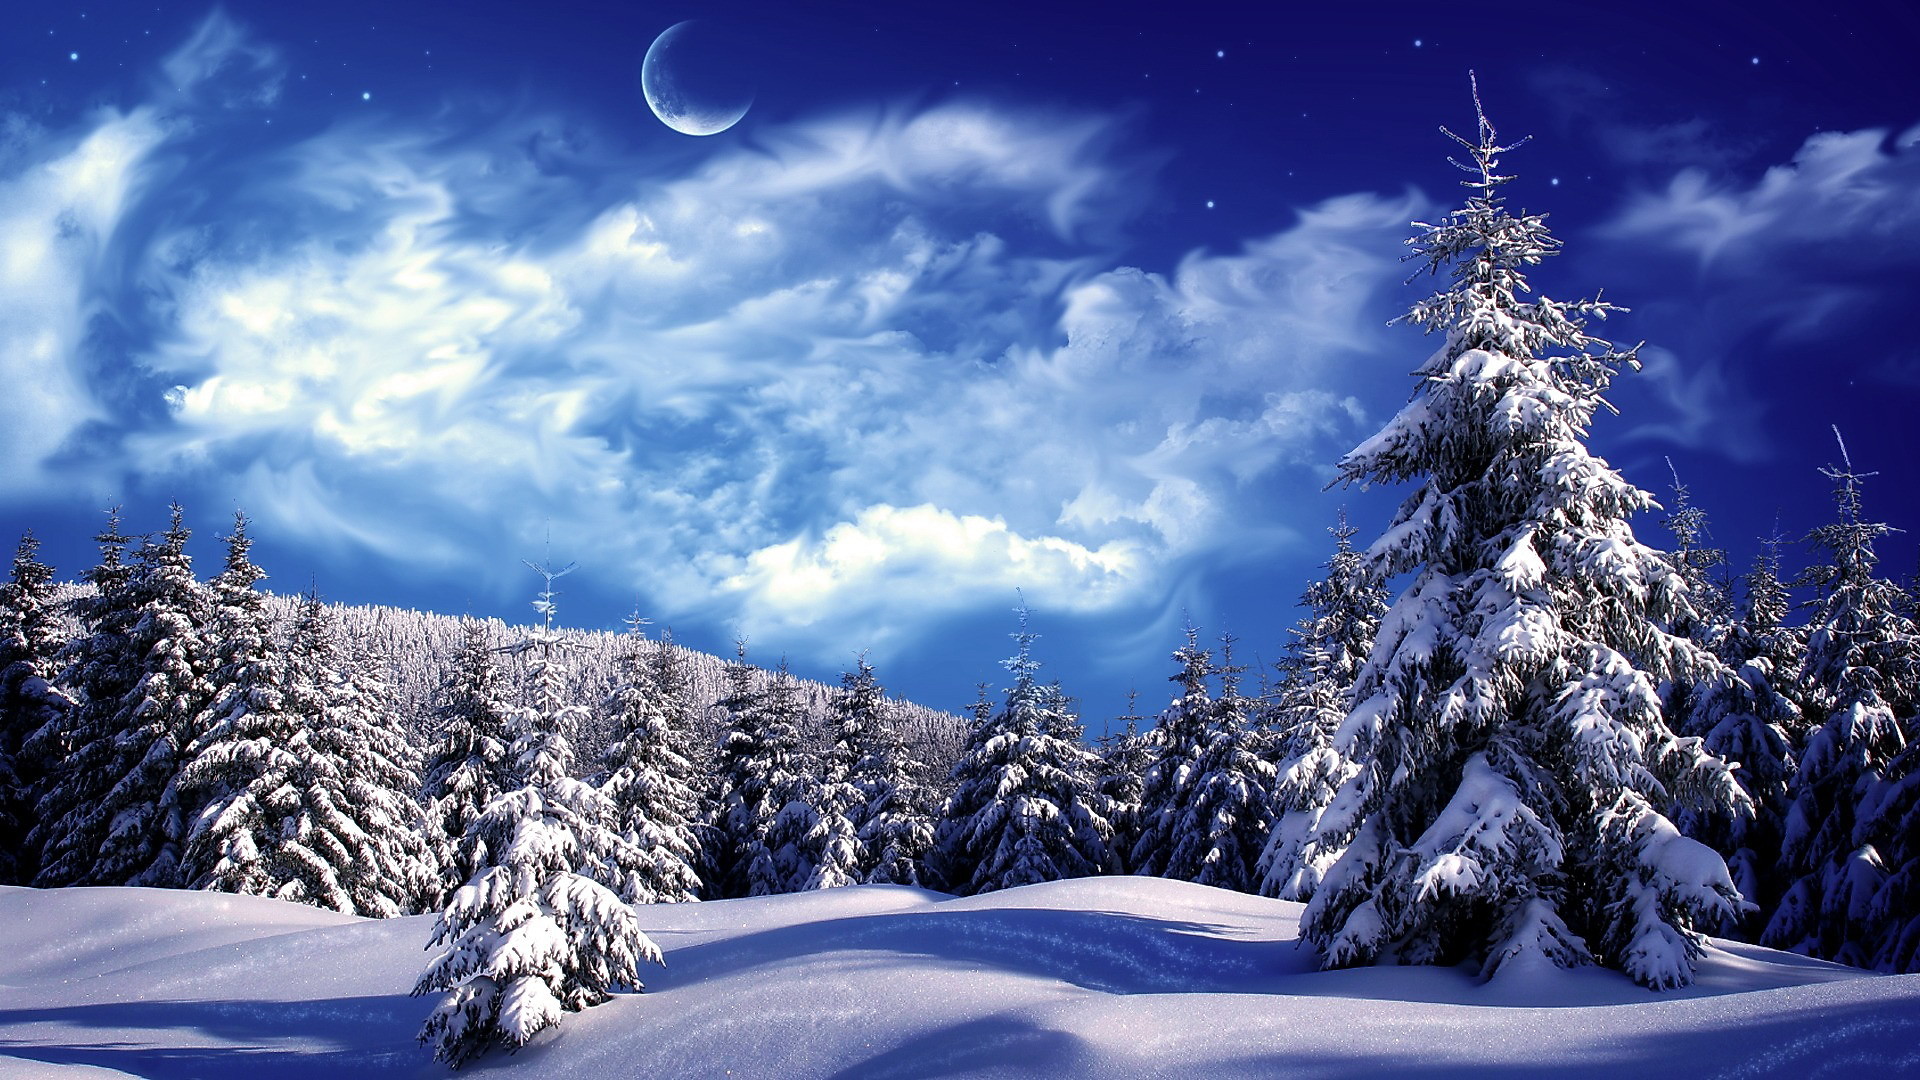 1920x1080 Snowy Winter Scenes Wallpaper | Snowy wonderland, mountain, scene, sky,  snow,